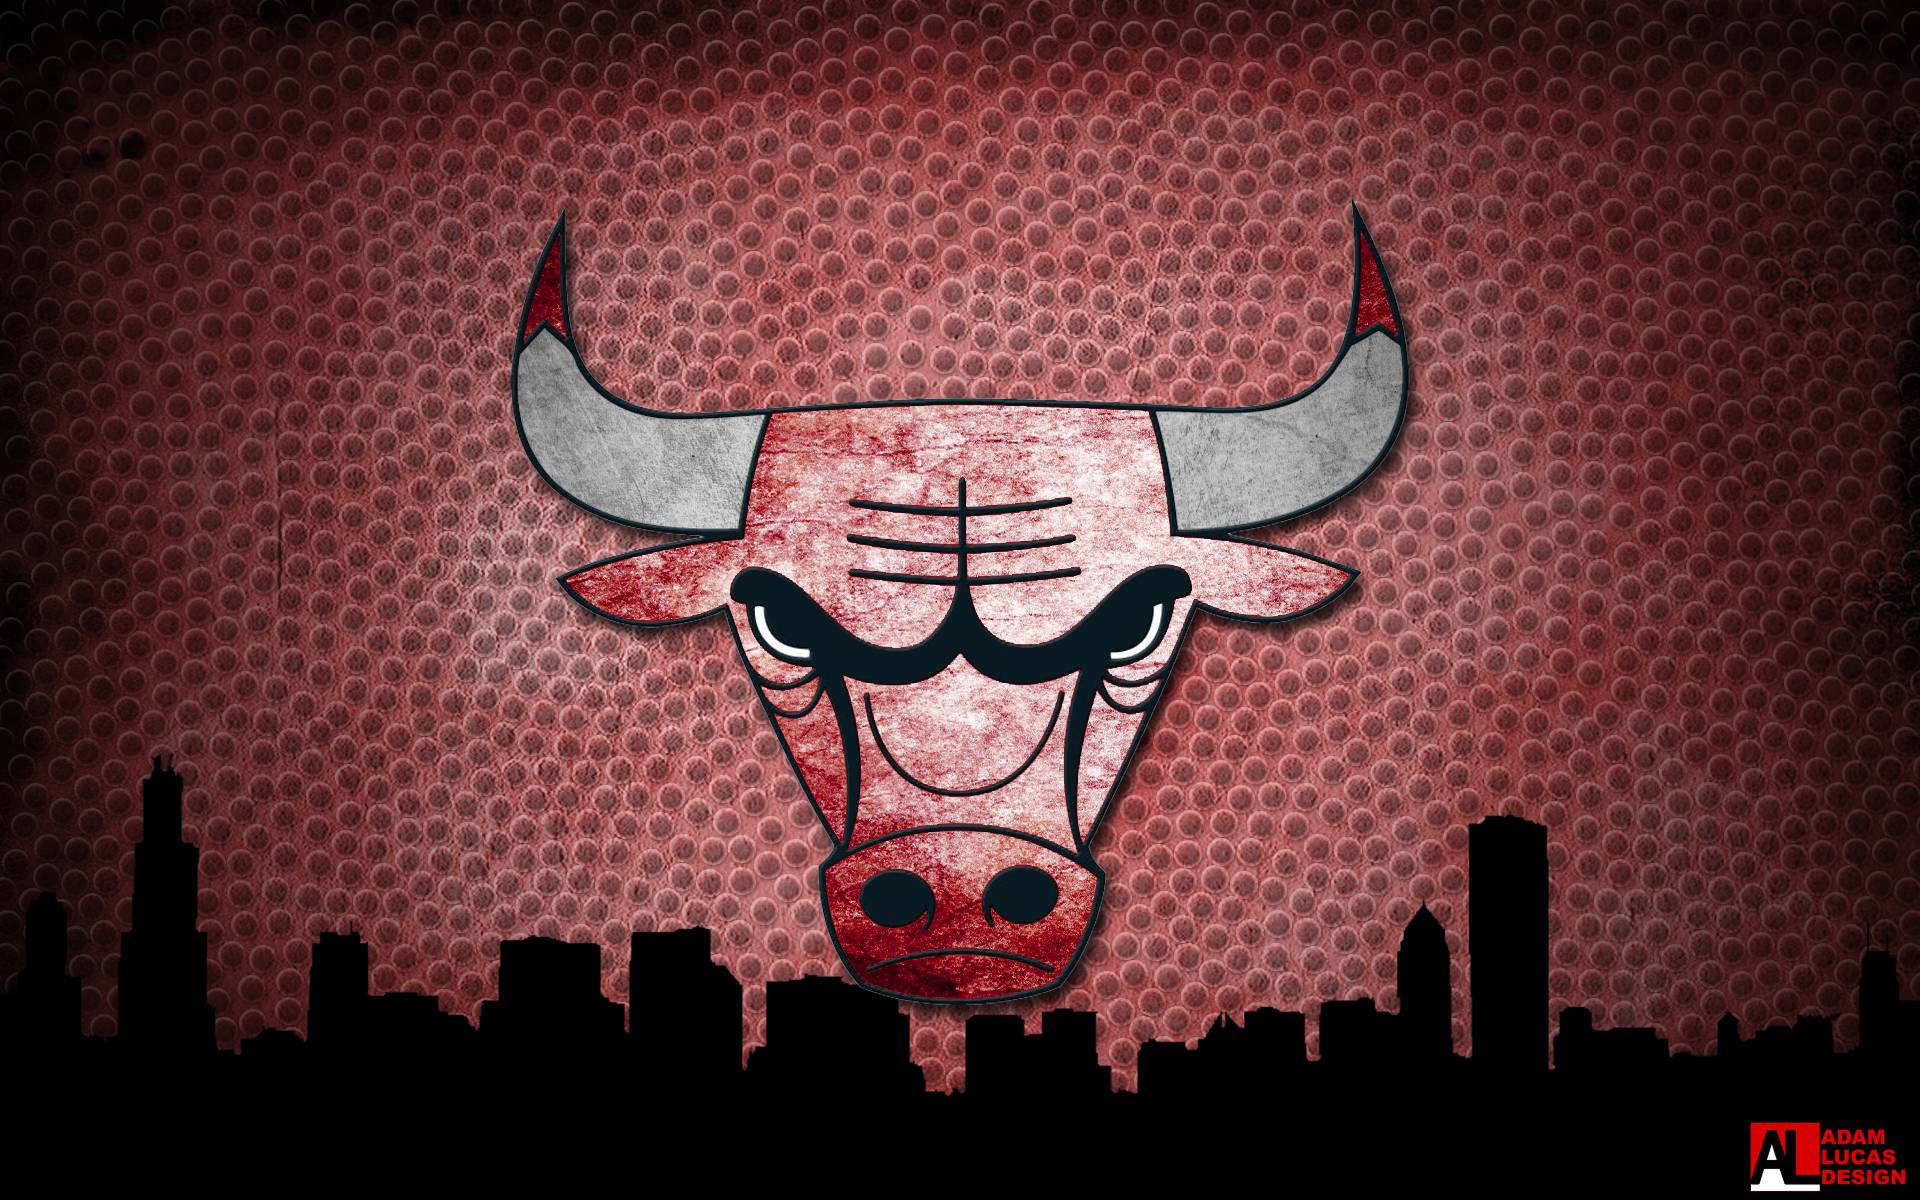 Chicago Bulls Wallpaper HD. Best Games Wallpaper